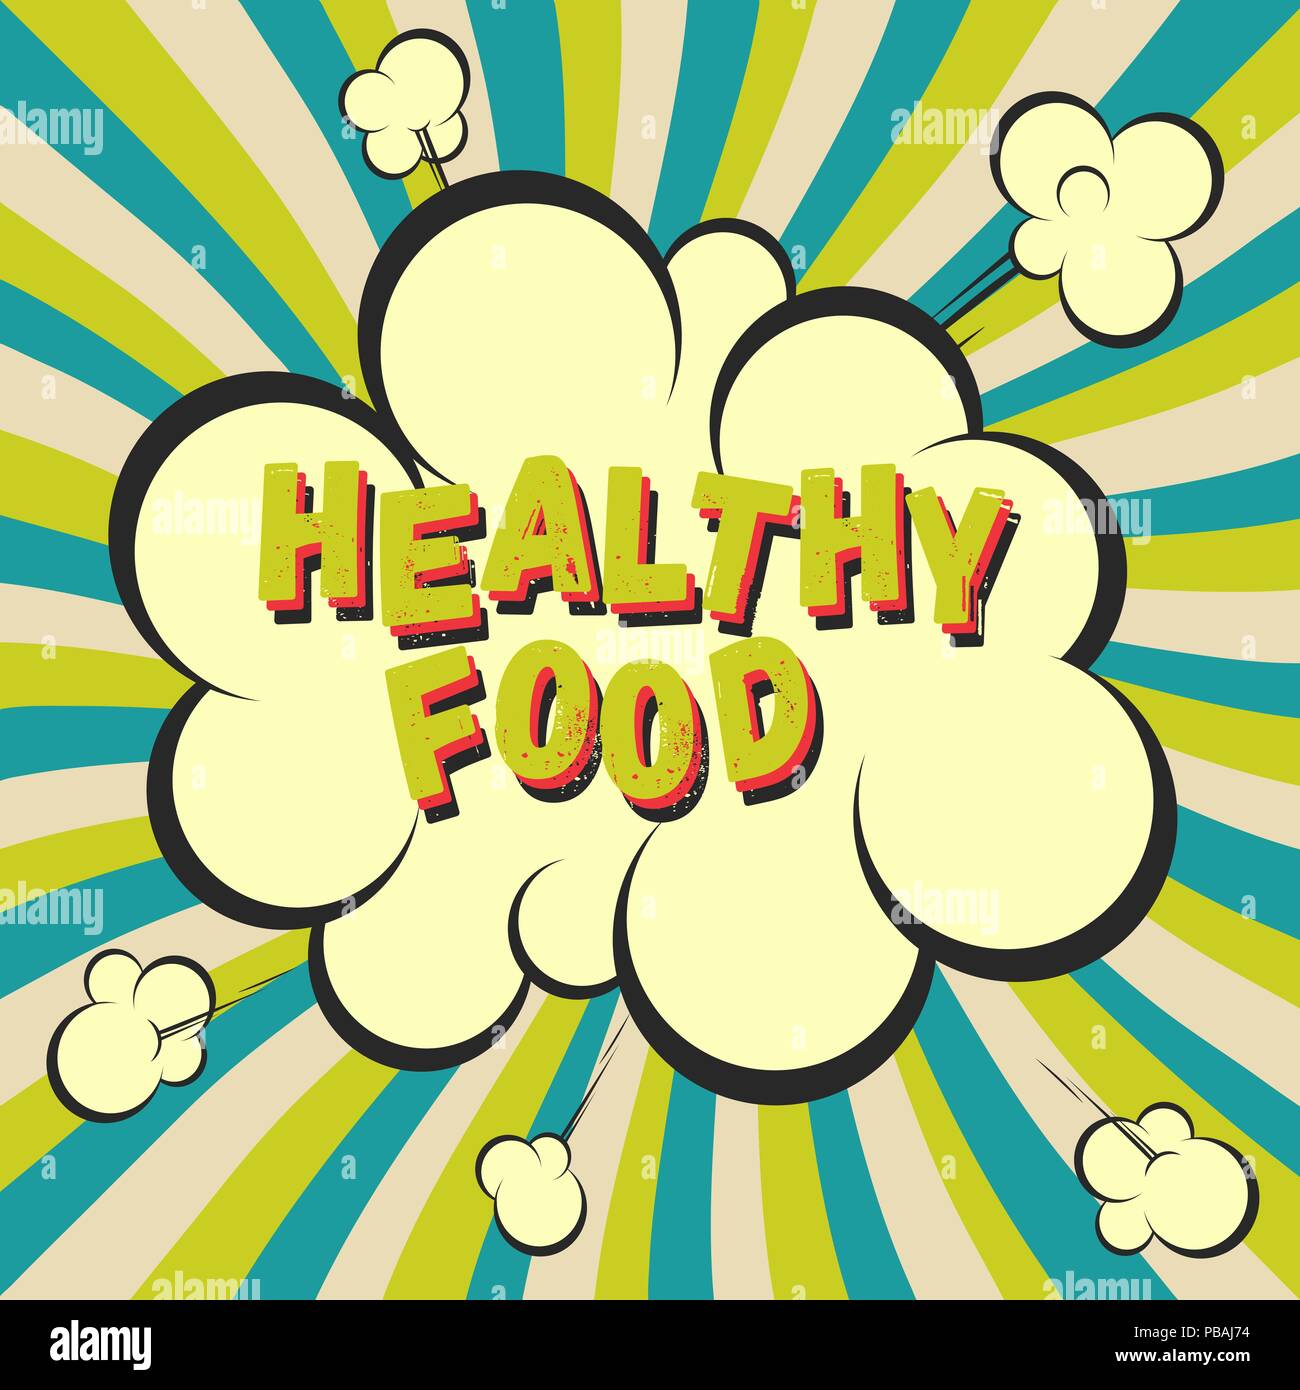 Gesundes Essen retro style Bild. Comic cartoon Explosion mit hypno strahlen Hintergrund. Vector Illustration für Diät und Ernährung, Gewichtsreduktion, Gesundheit. Stock Vektor